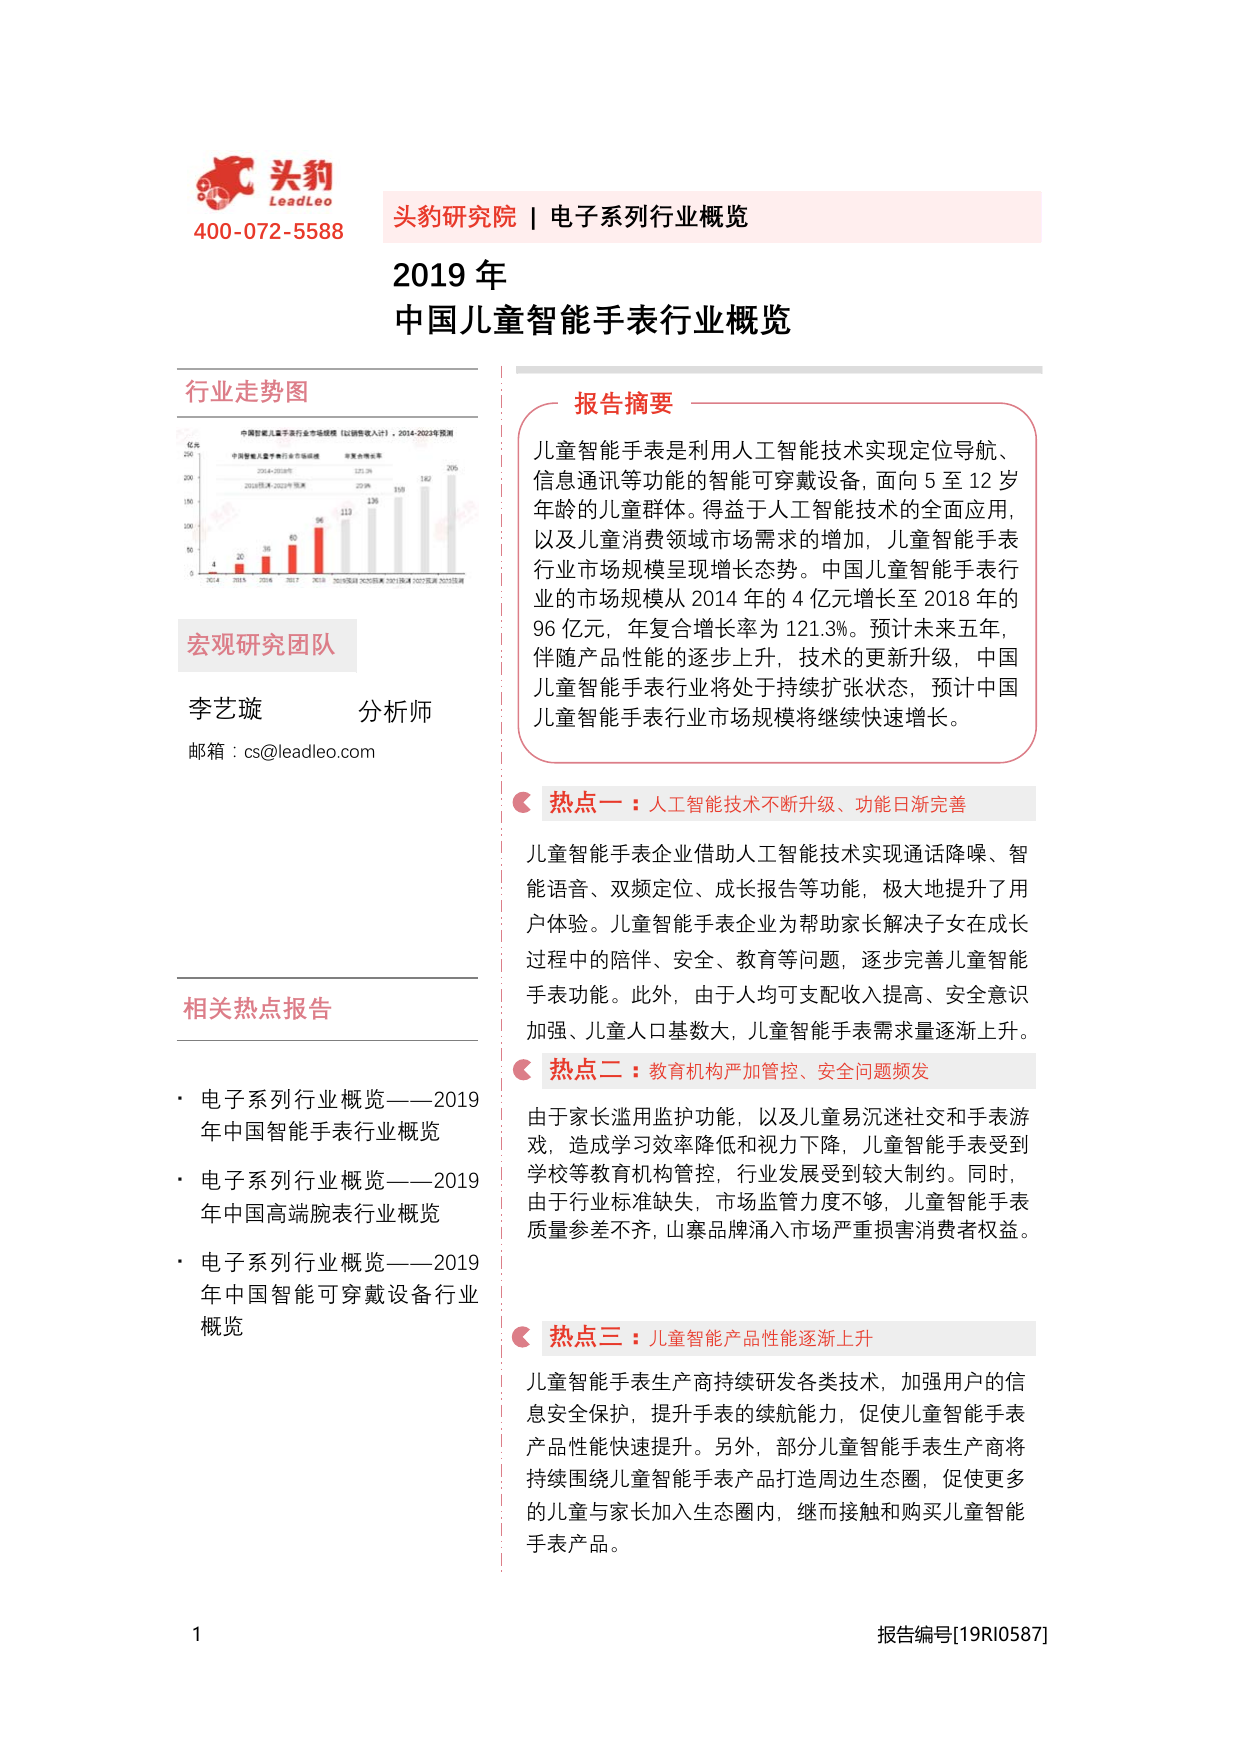 -头豹研究院2019年中国儿童智能手表行业概览-2020-08-20